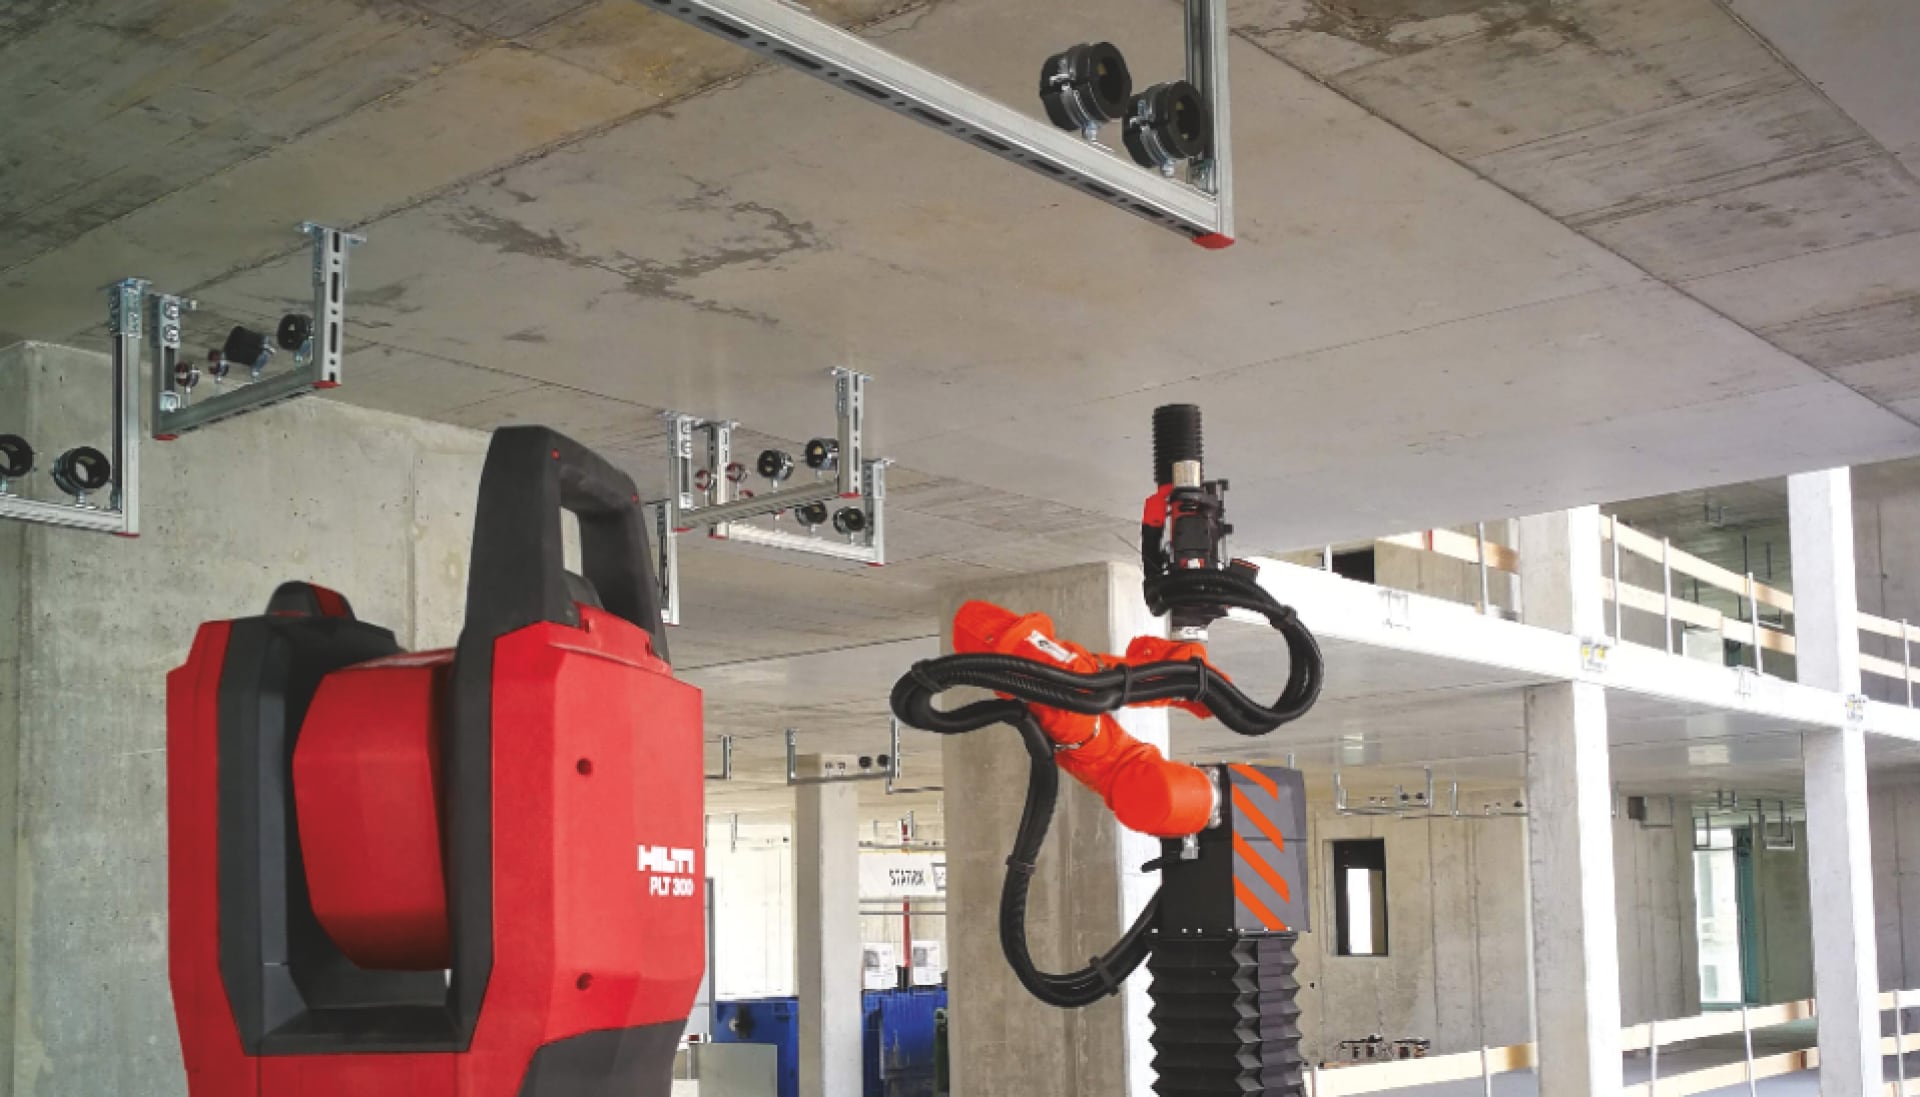 Sistema di installazione di servizi edili, stazione totale e robot per foratura sopratesta in un cantiere